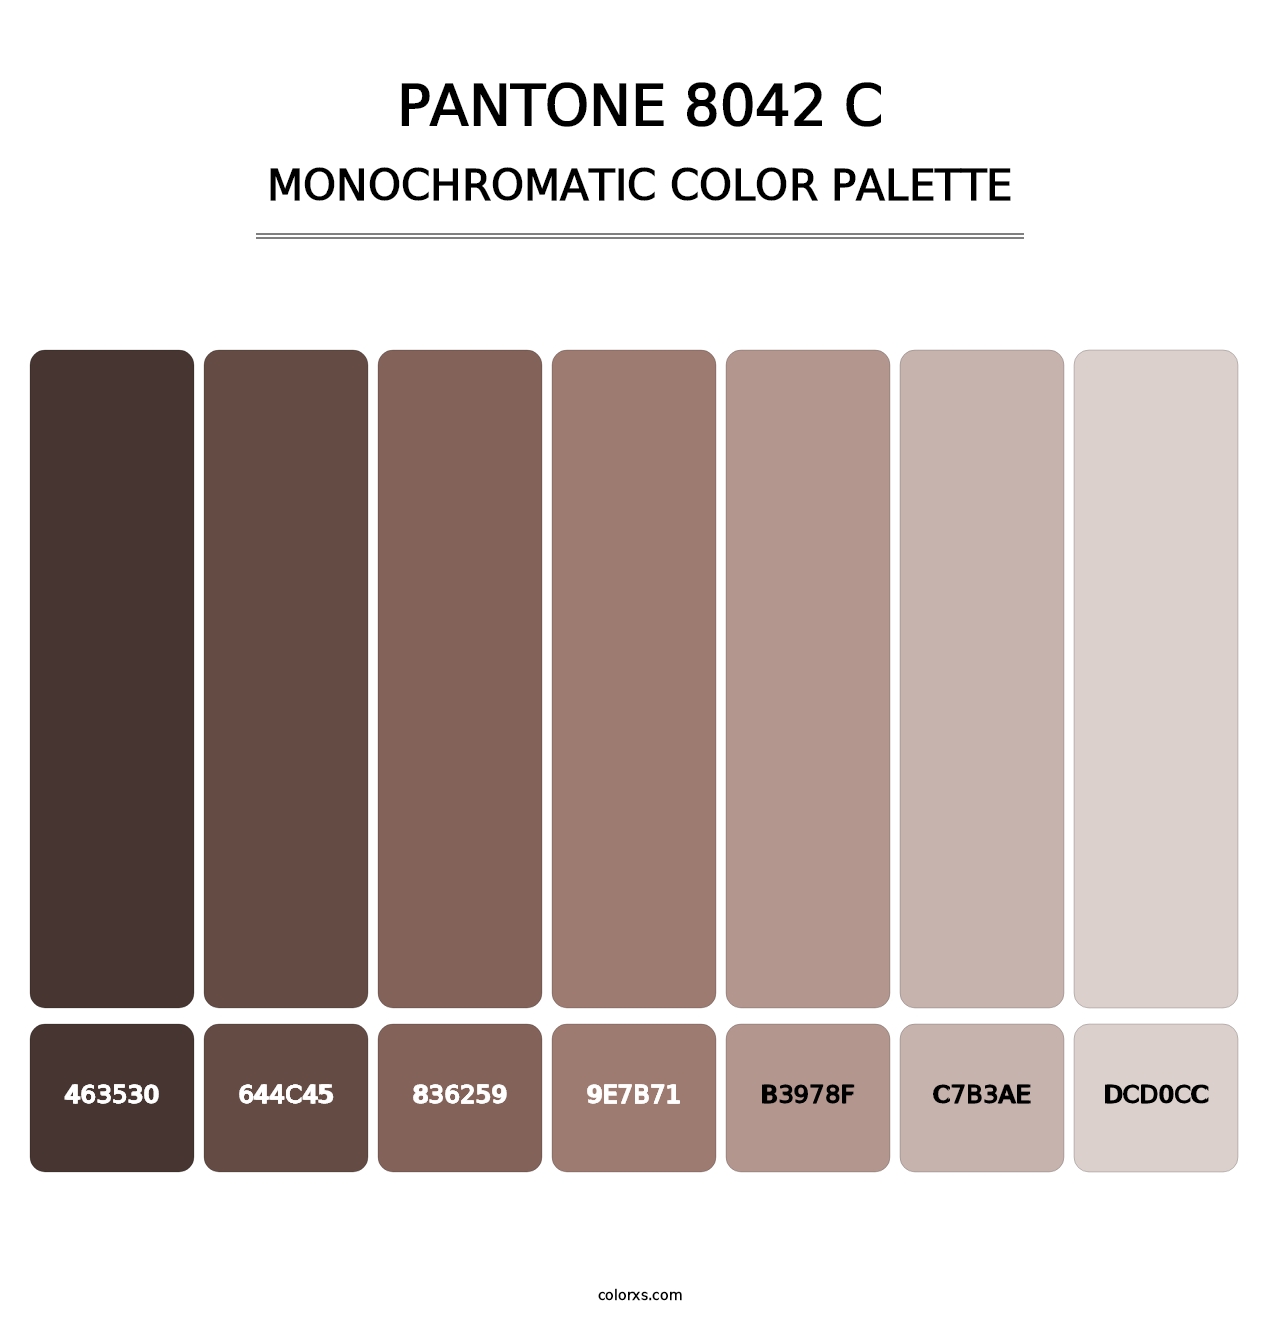 PANTONE 8042 C - Monochromatic Color Palette